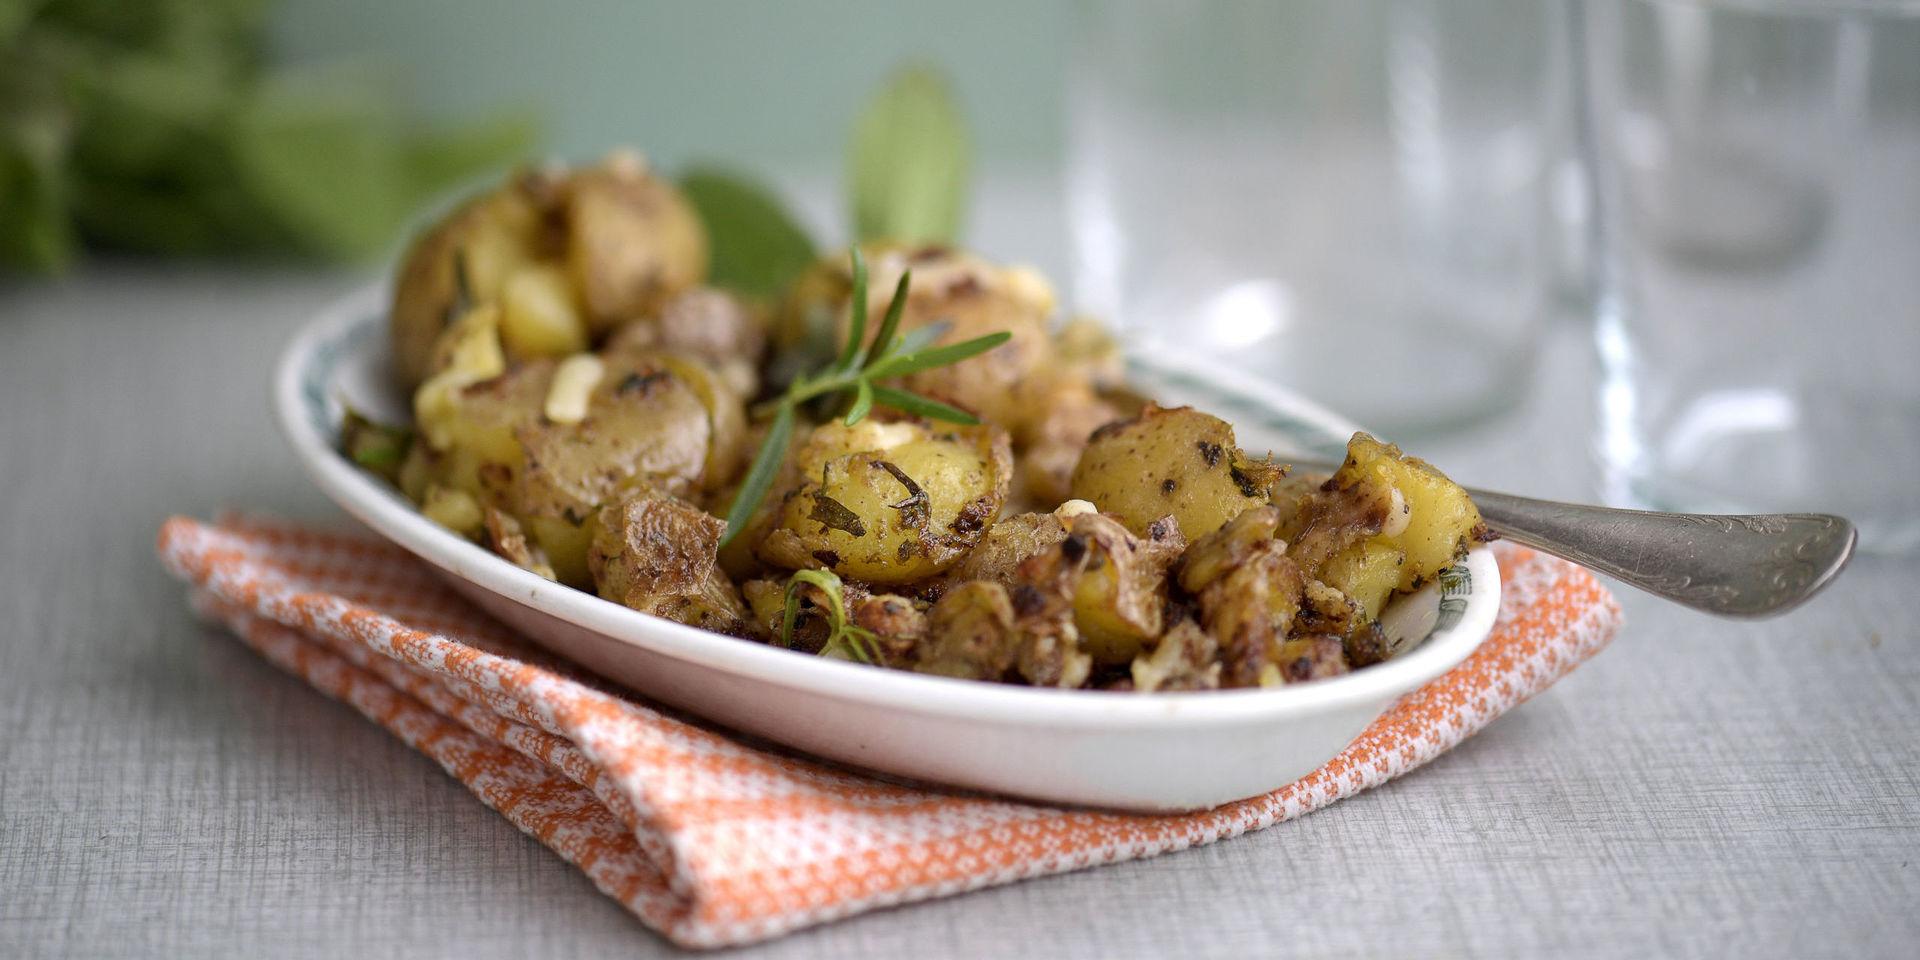 Frasig örtpotatis smakar suveränt till grillat.